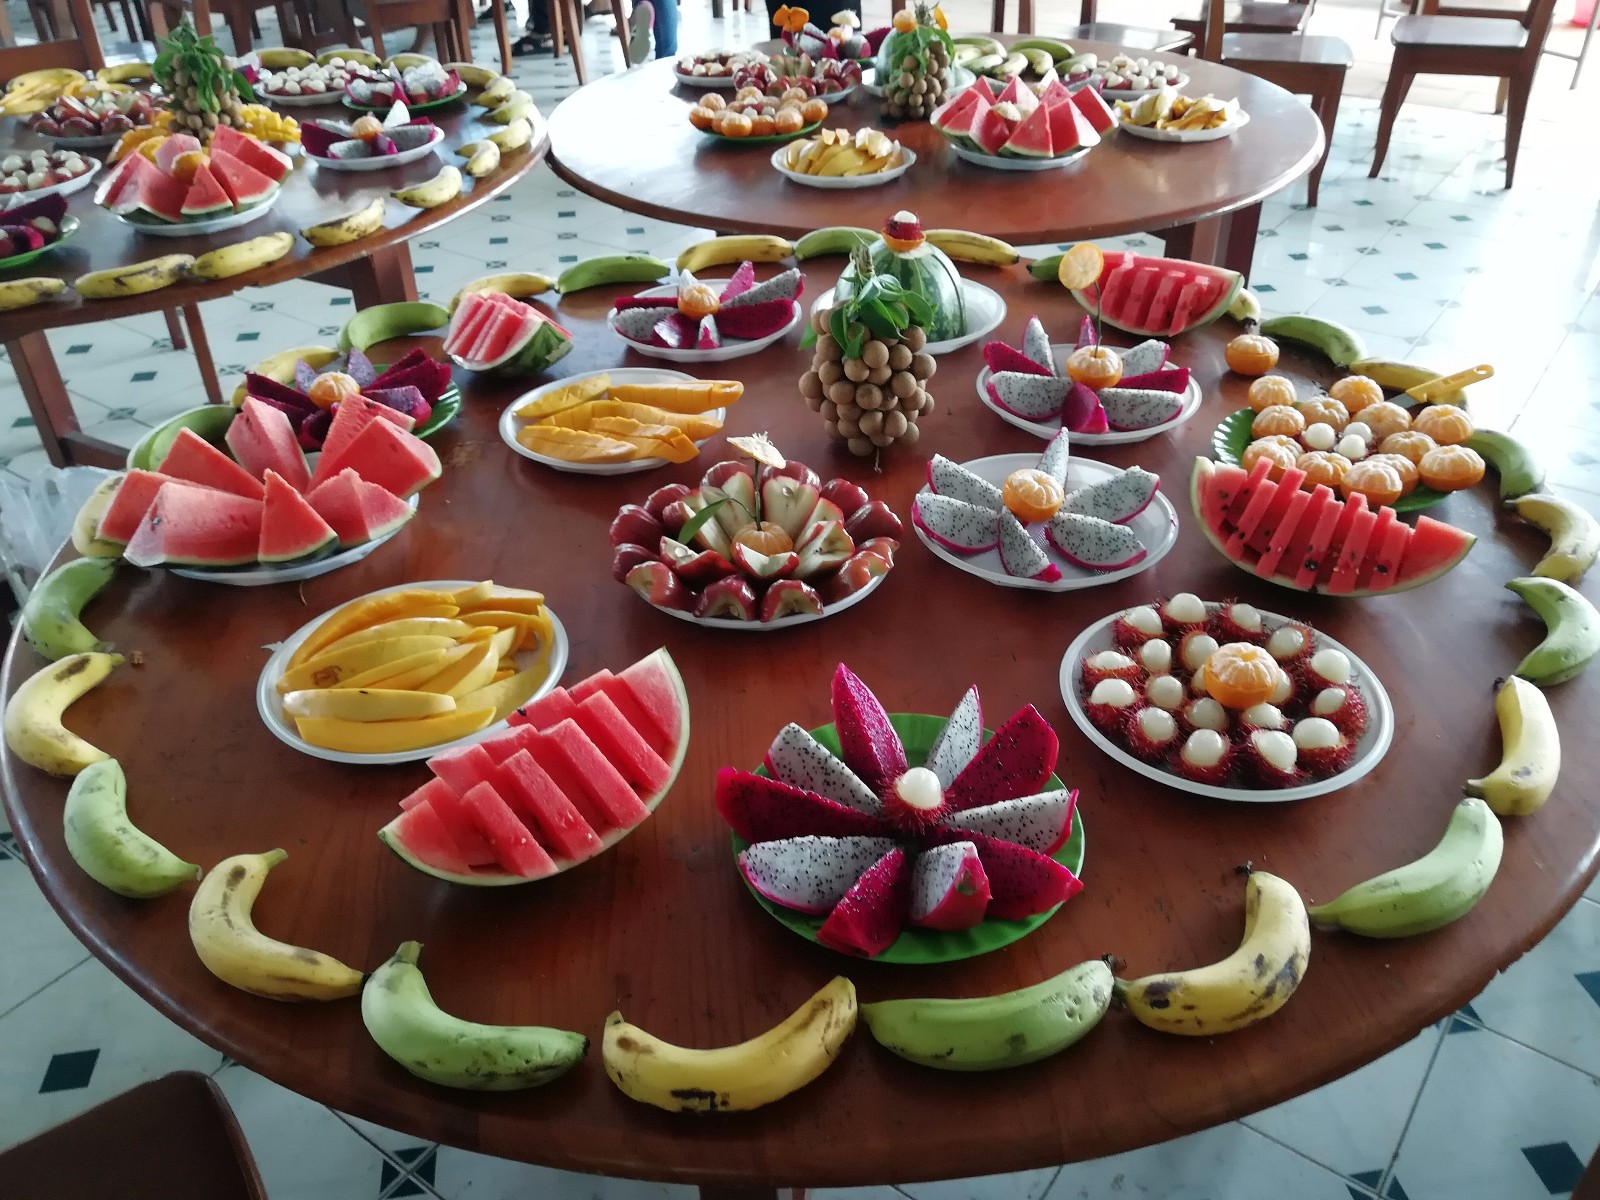 越南芽庄攻略:你知道越南三宝餐是啥吗?走心的水果派对!